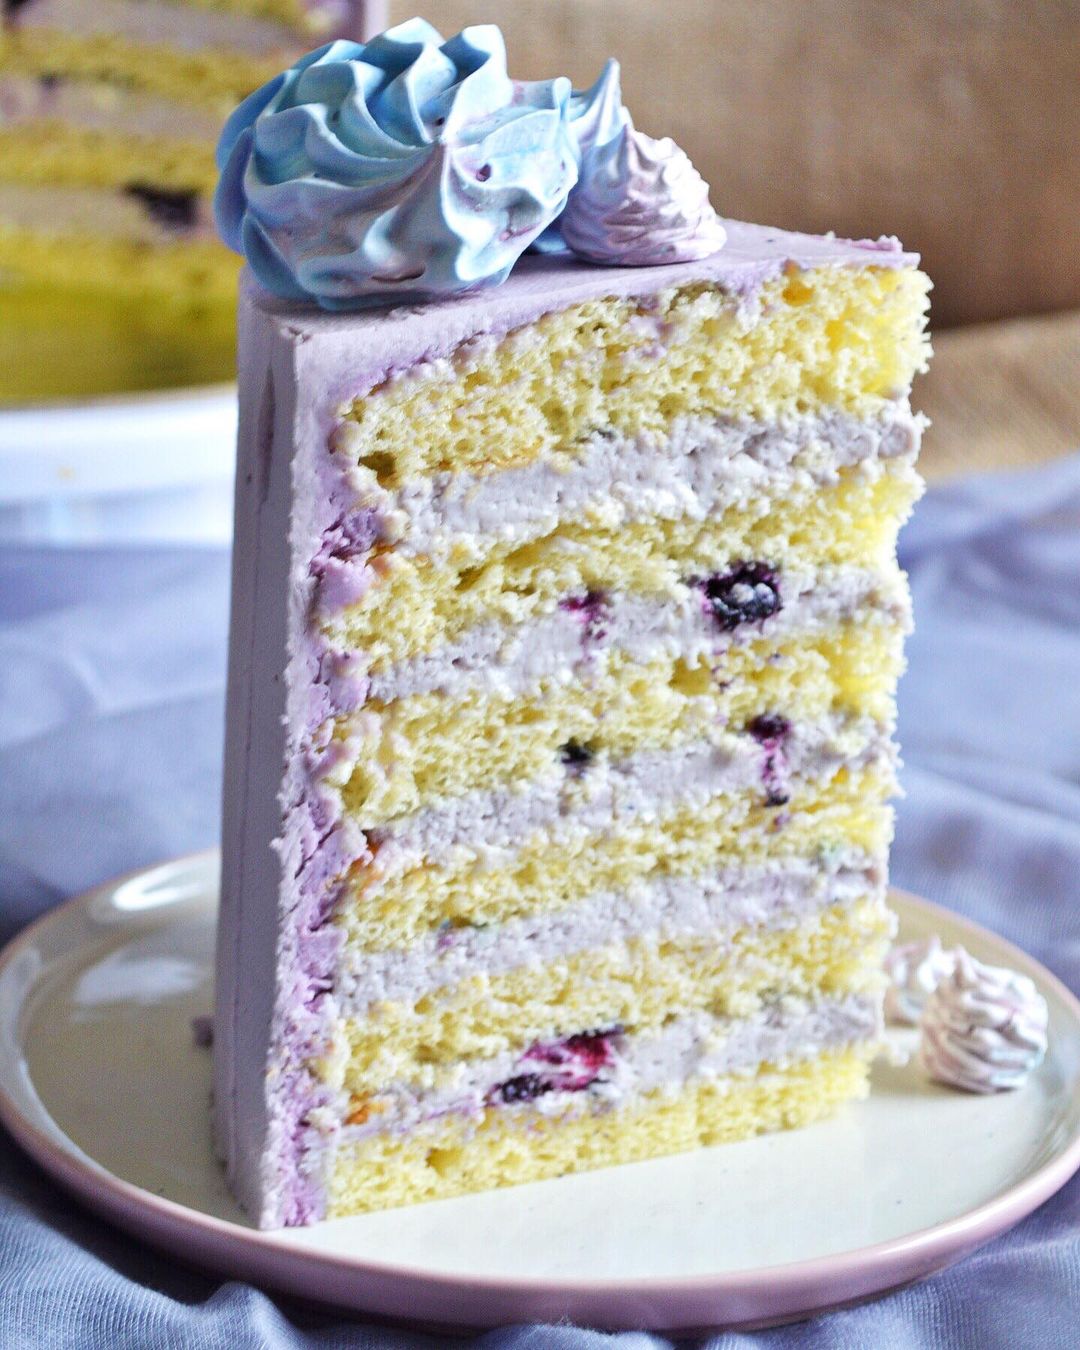 Blueberry ice cream cake